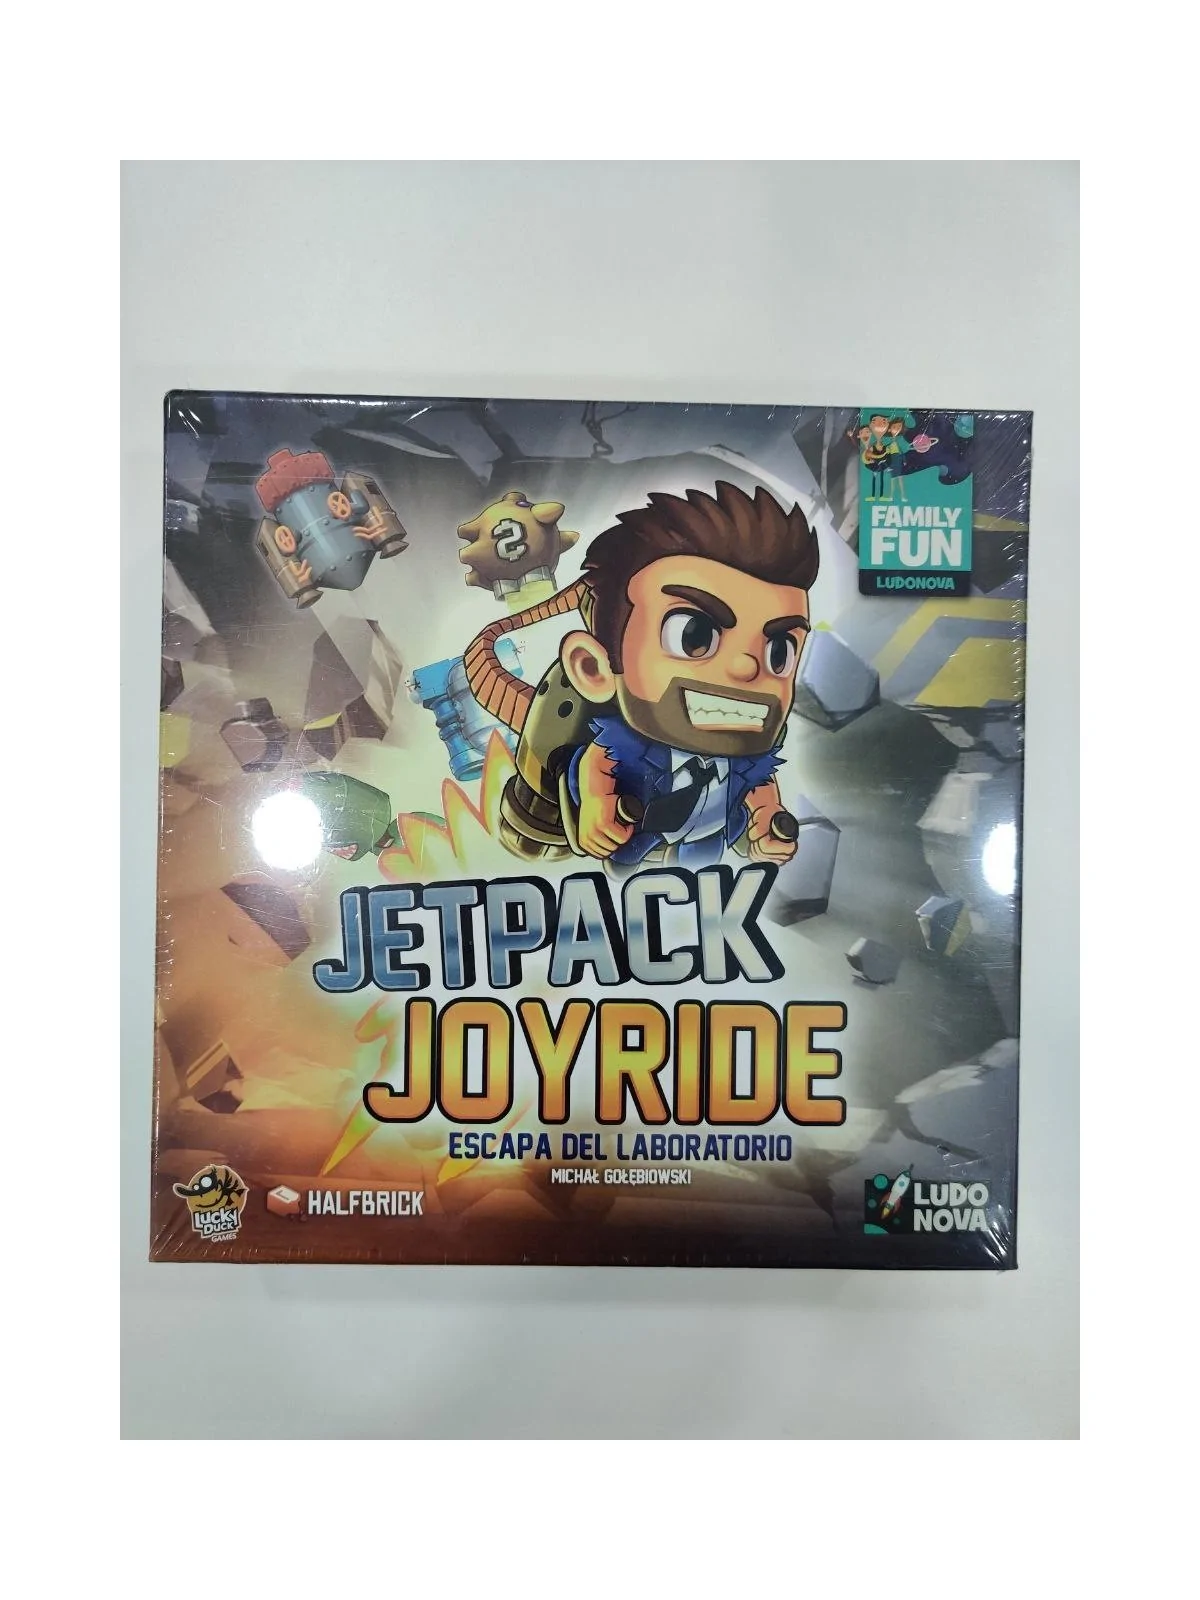 Comprar Jetpack Joyride [SEGUNDA MANO] barato al mejor precio 10,00 € 